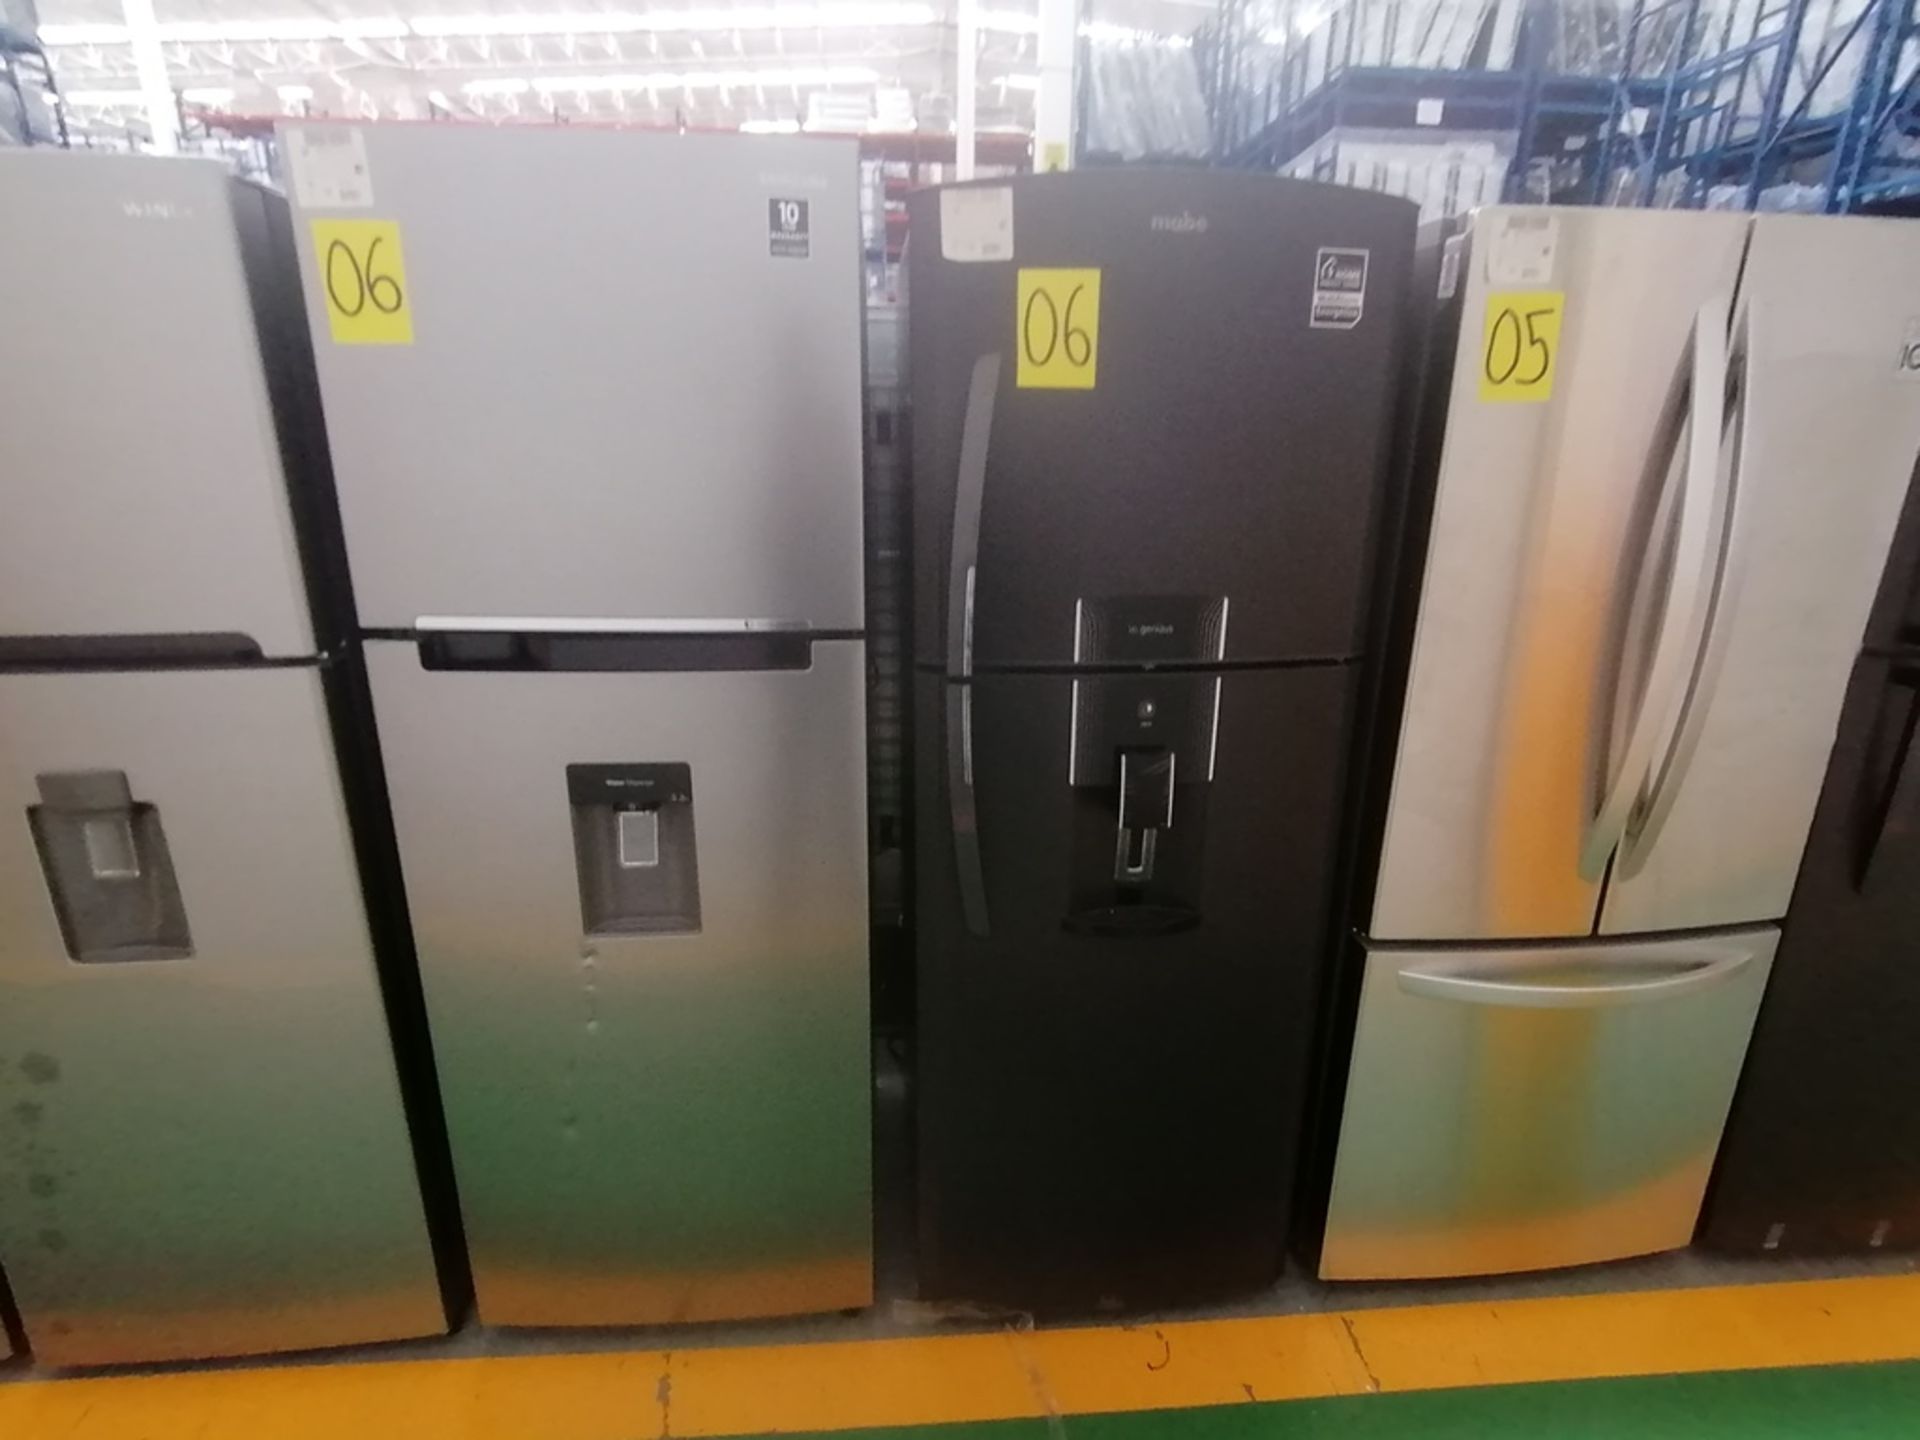 Lote de 2 refrigeradores incluye: 1 Refrigerador con dispensador de agua, Marca Mabe, Modelo RME360 - Image 4 of 15